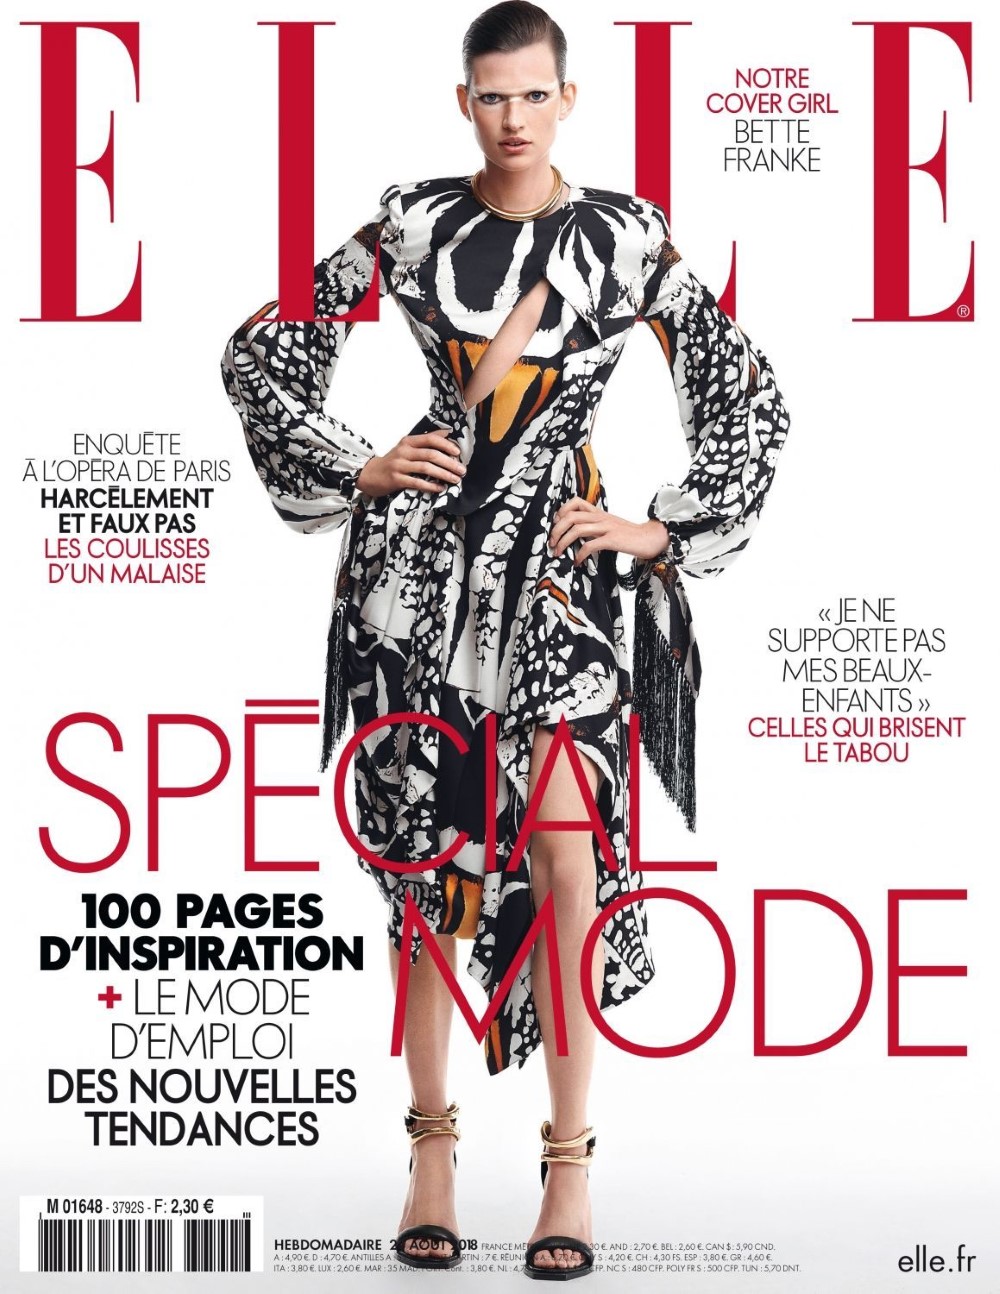 Bette Franke covers Elle France August 24th, 2018 by Sam Hendel